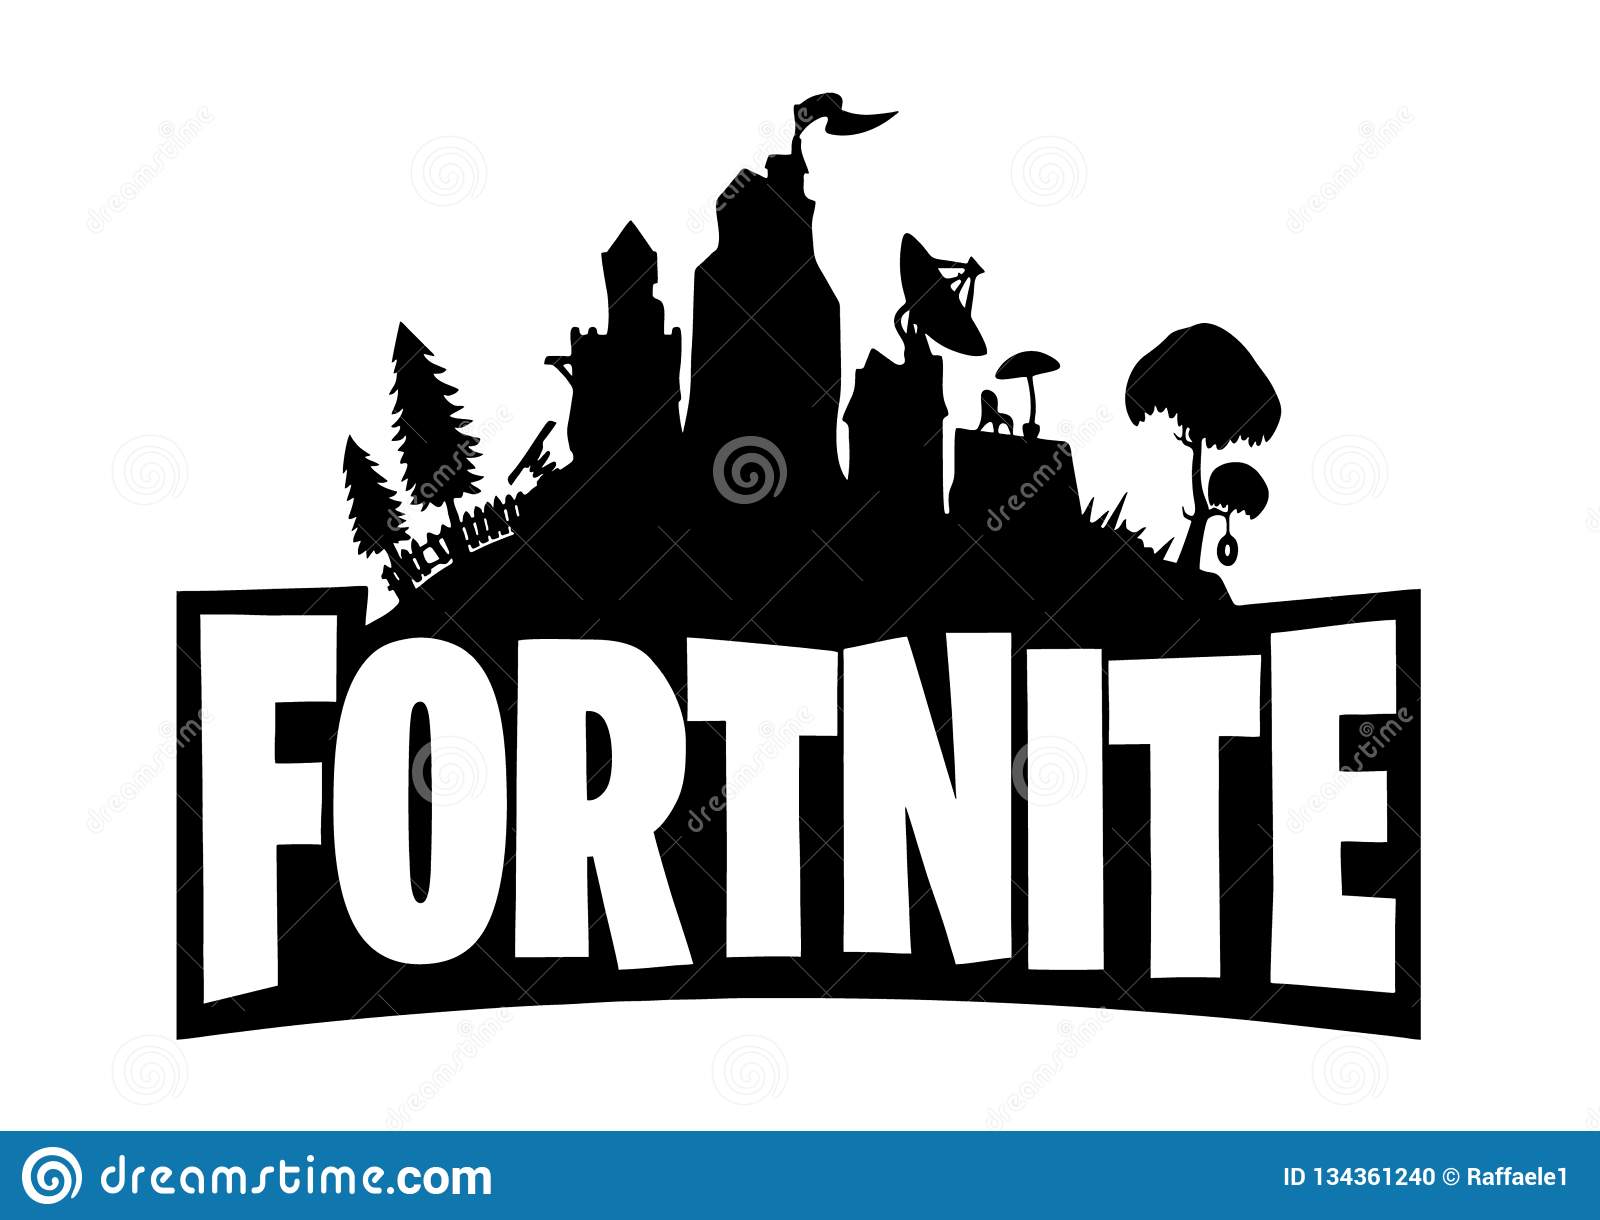 Pictures Of Fortnite Logo - KibrisPDR